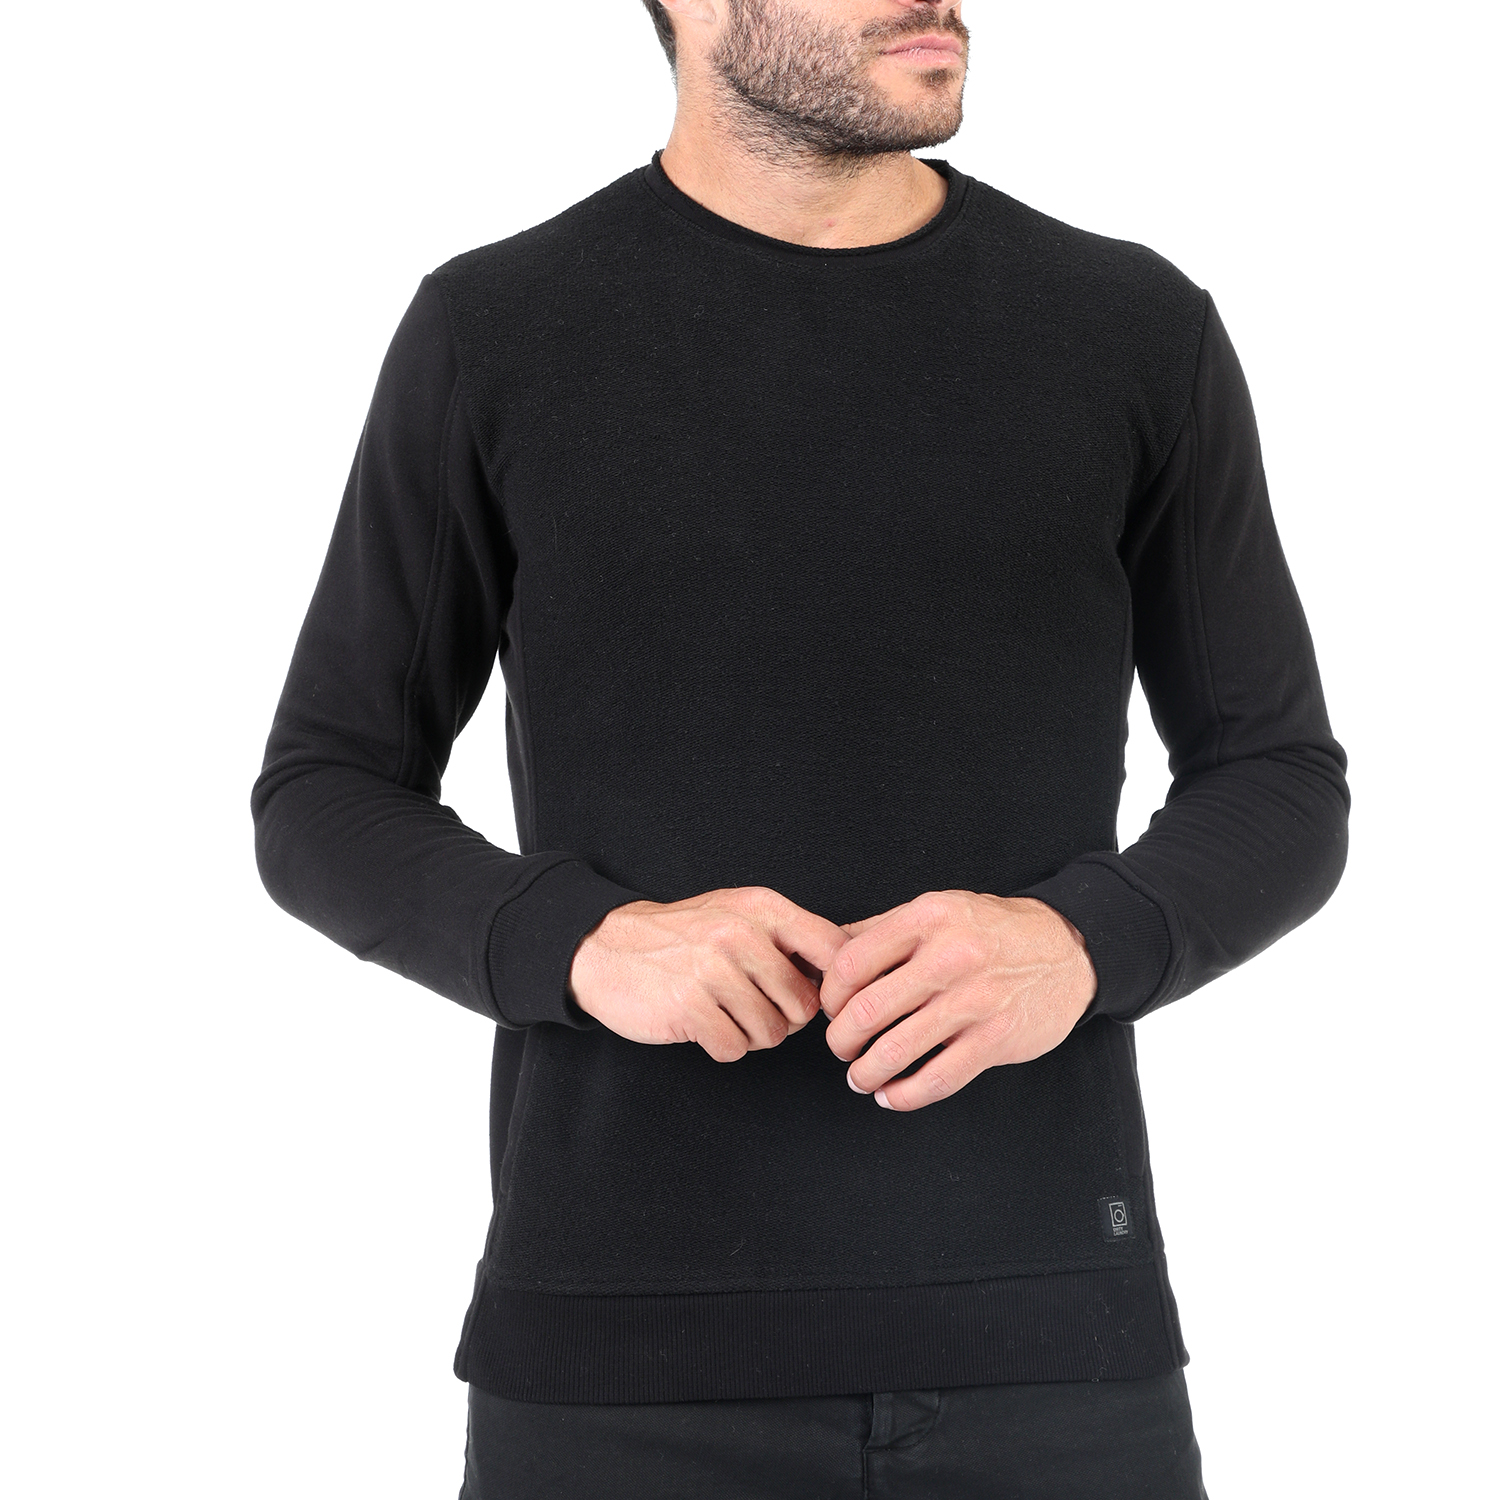 Ανδρικά/Ρούχα/Φούτερ/Μπλούζες DIRTY LAUNDRY - Ανδρική φούτερ μπλούζα DIRTY LAUNDRY μαύρη